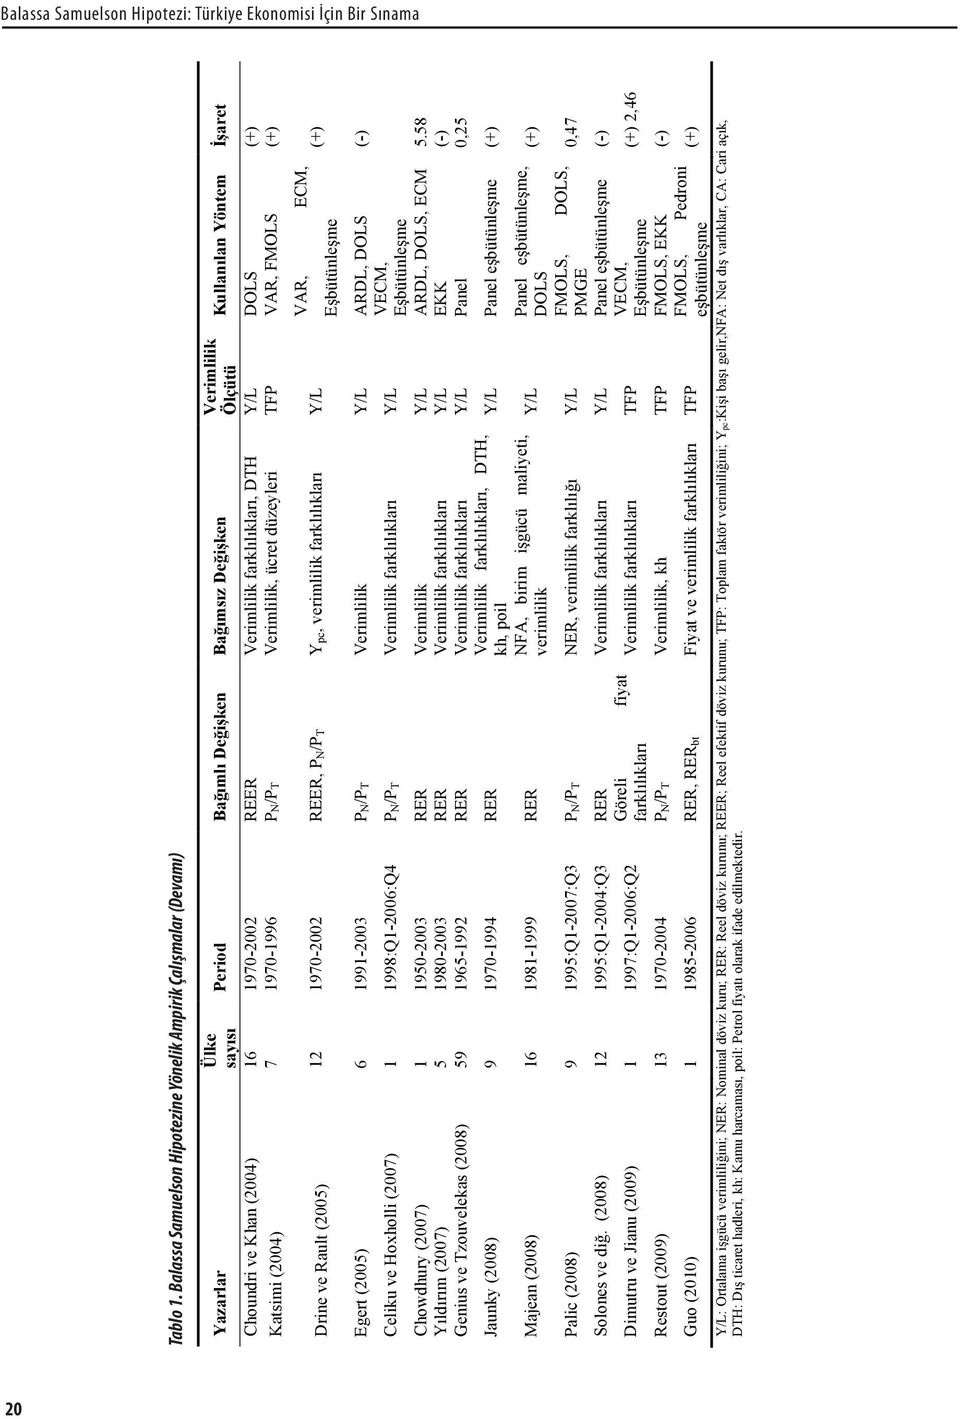 Verimlilik Ölçütü Kullanılan Yöntem İşaret Choundri ve Khan (2004) 16 1970-2002 REER Verimlilik farklılıkları, DTH Y/L DOLS (+) Katsimi (2004) 7 1970-1996 PN/PT Verimlilik, ücret düzeyleri TFP VAR,